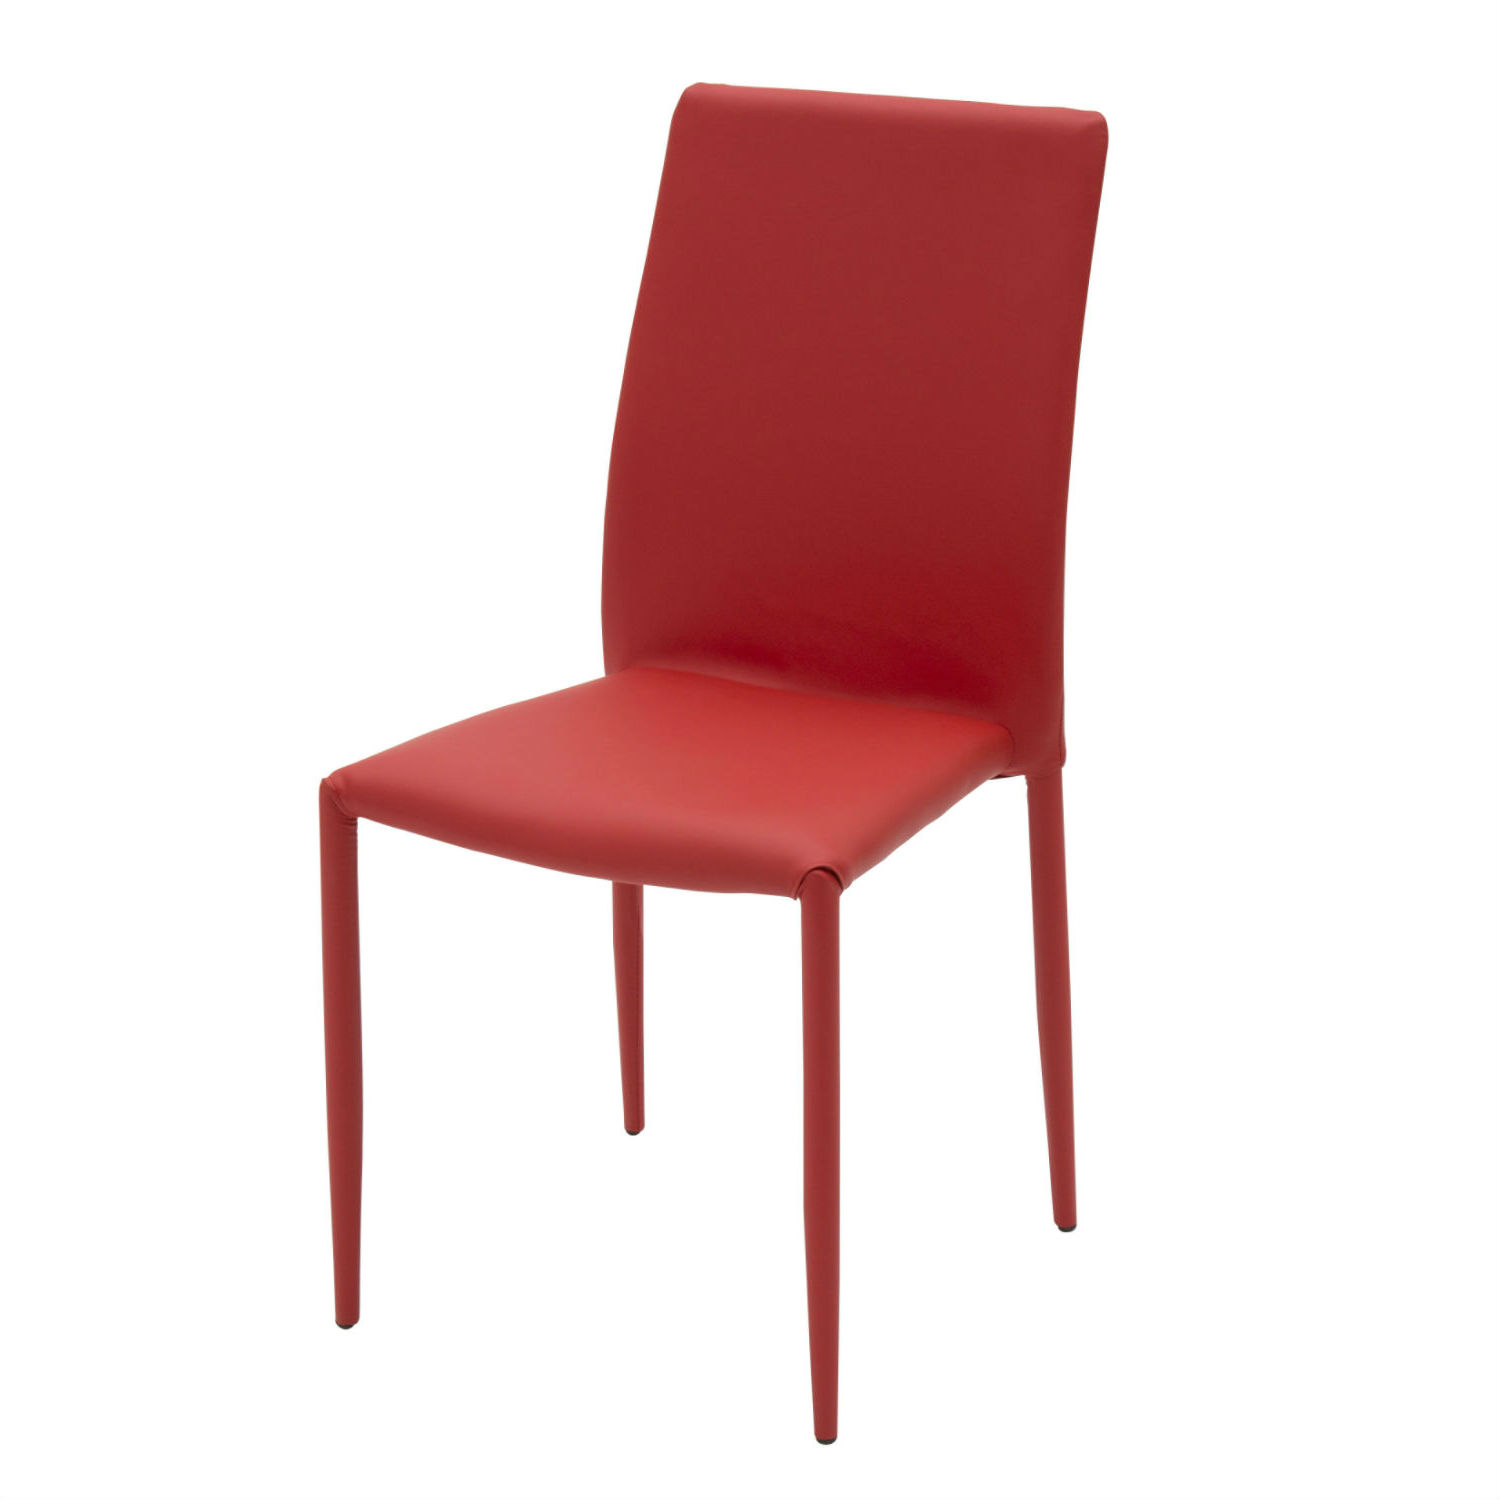 Sedia Moderna Per Soggiorno Rivestita In Ecopelle Rossa In Confezione Da 6 Pezzi (disponibile anche in altri colori)